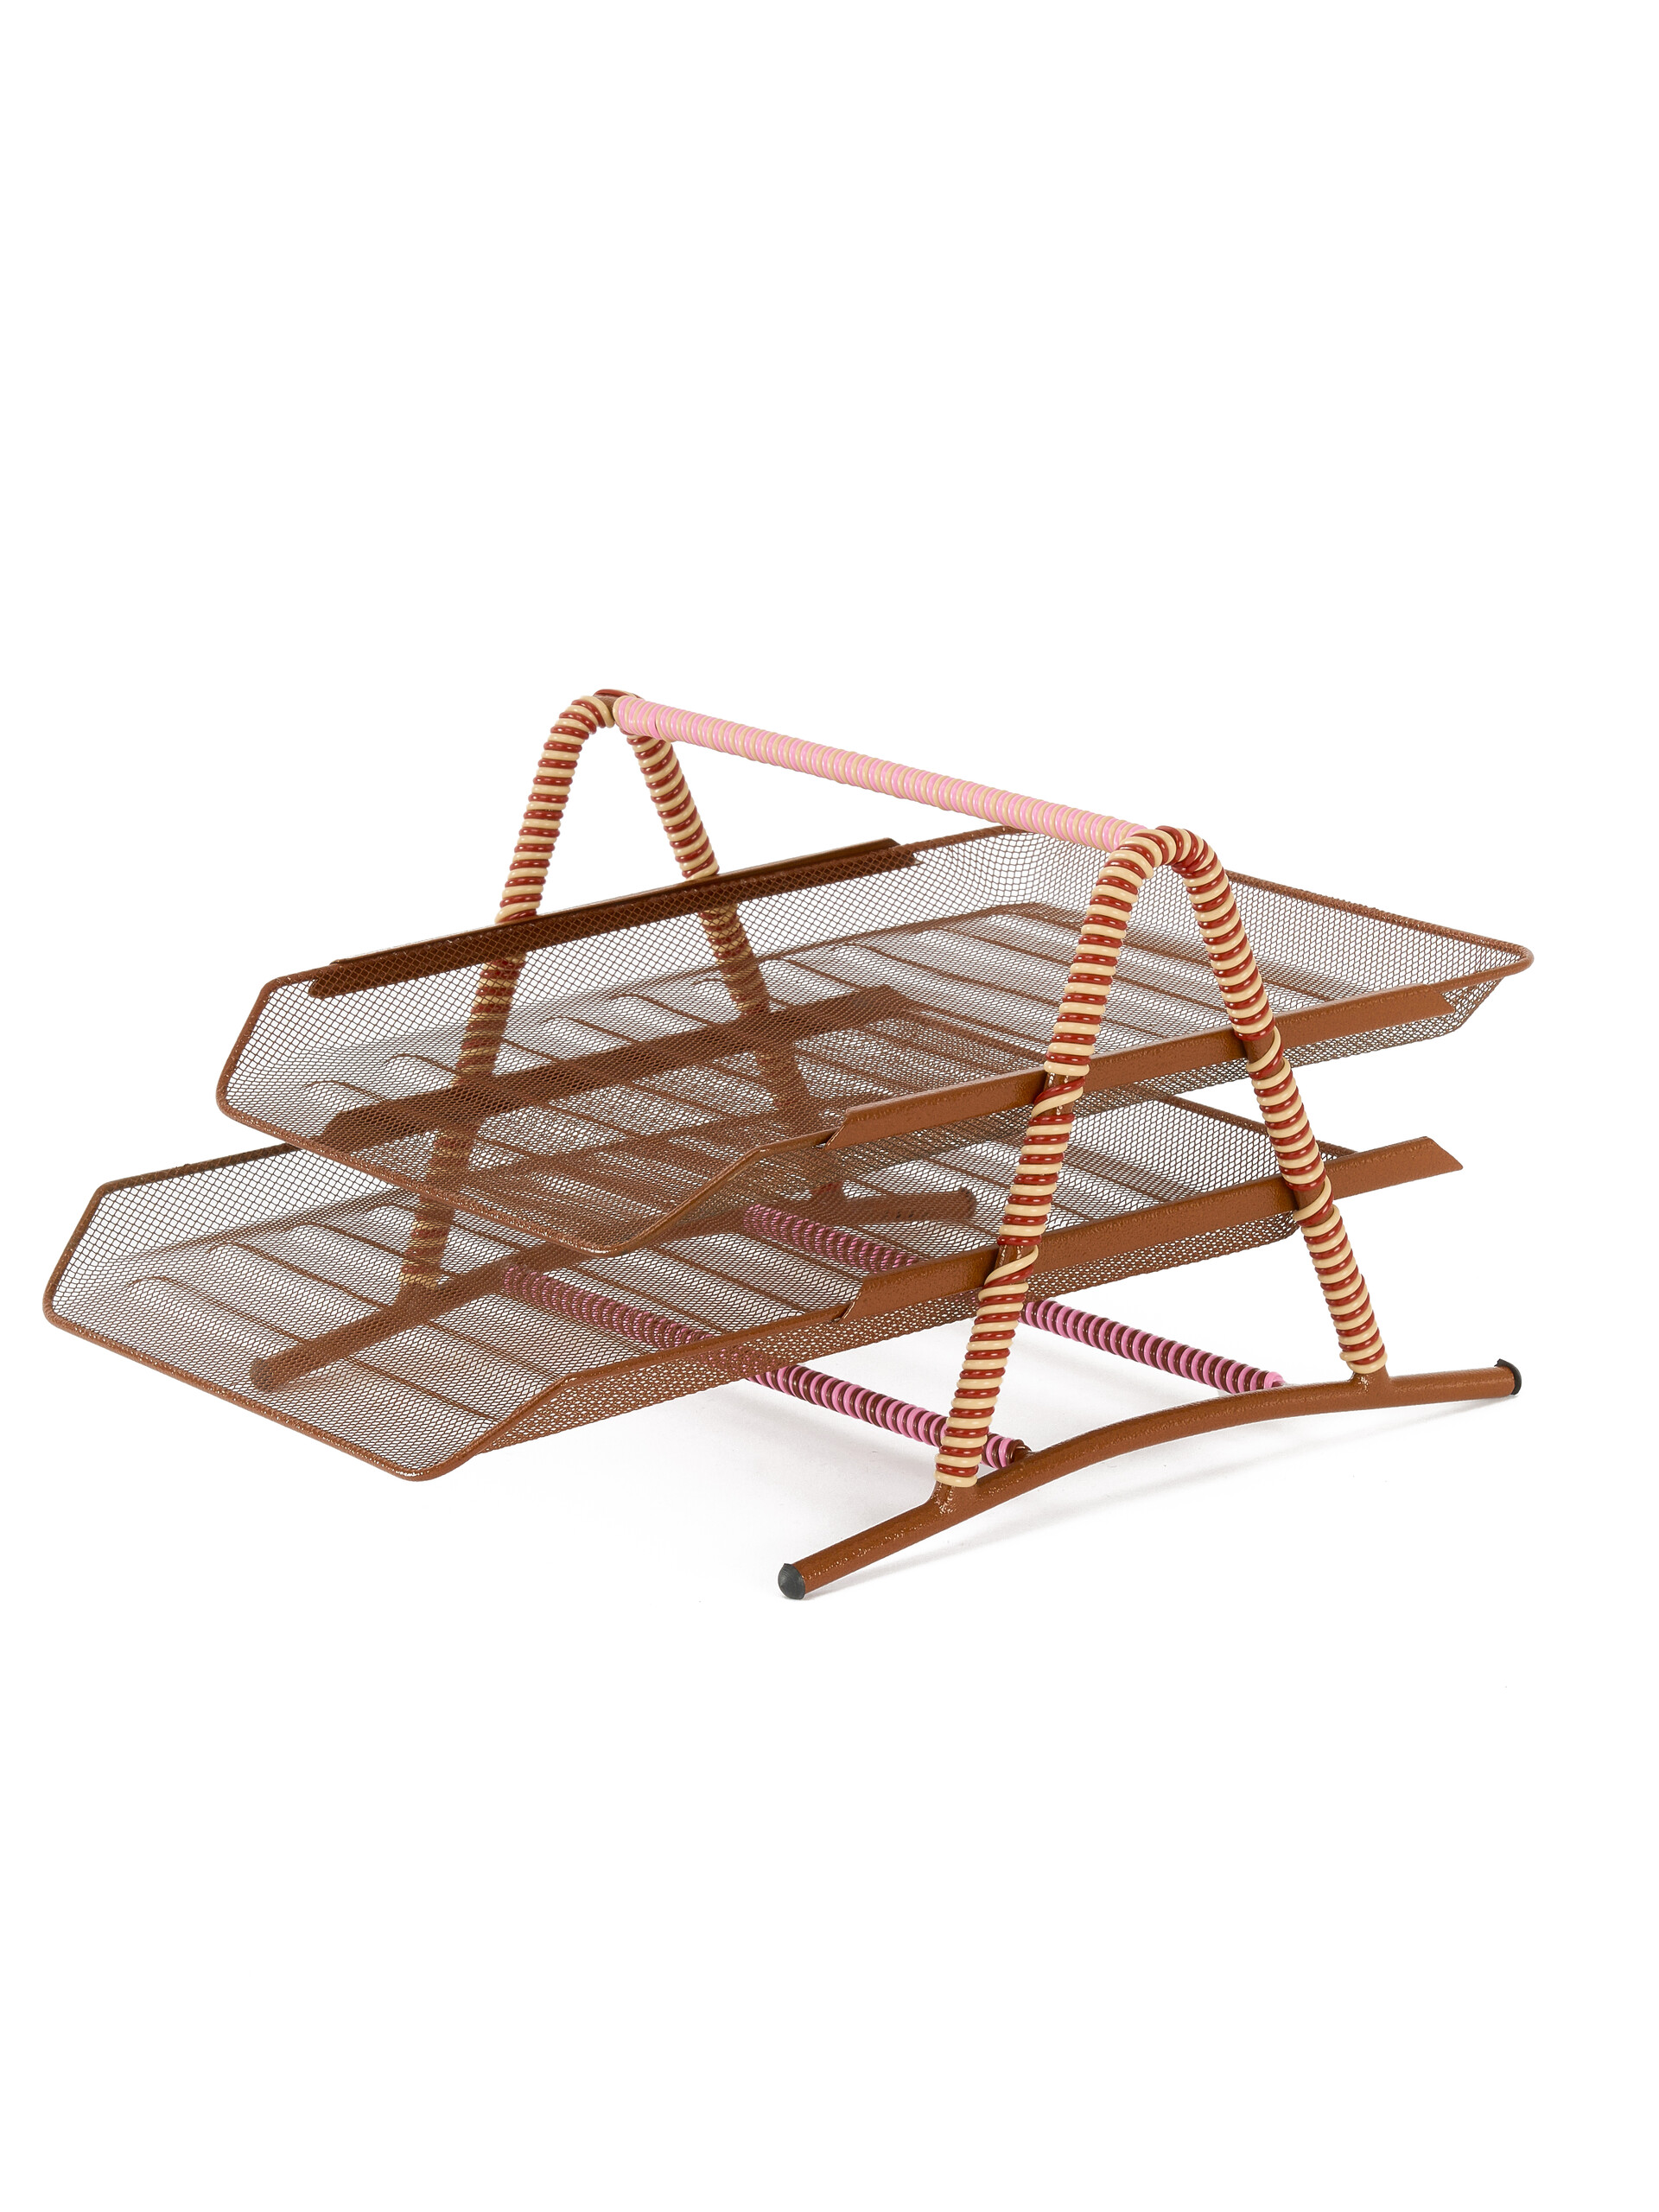 Bandeja de escritorio marrón con varias alturas Marni Market - Muebles - Image 3